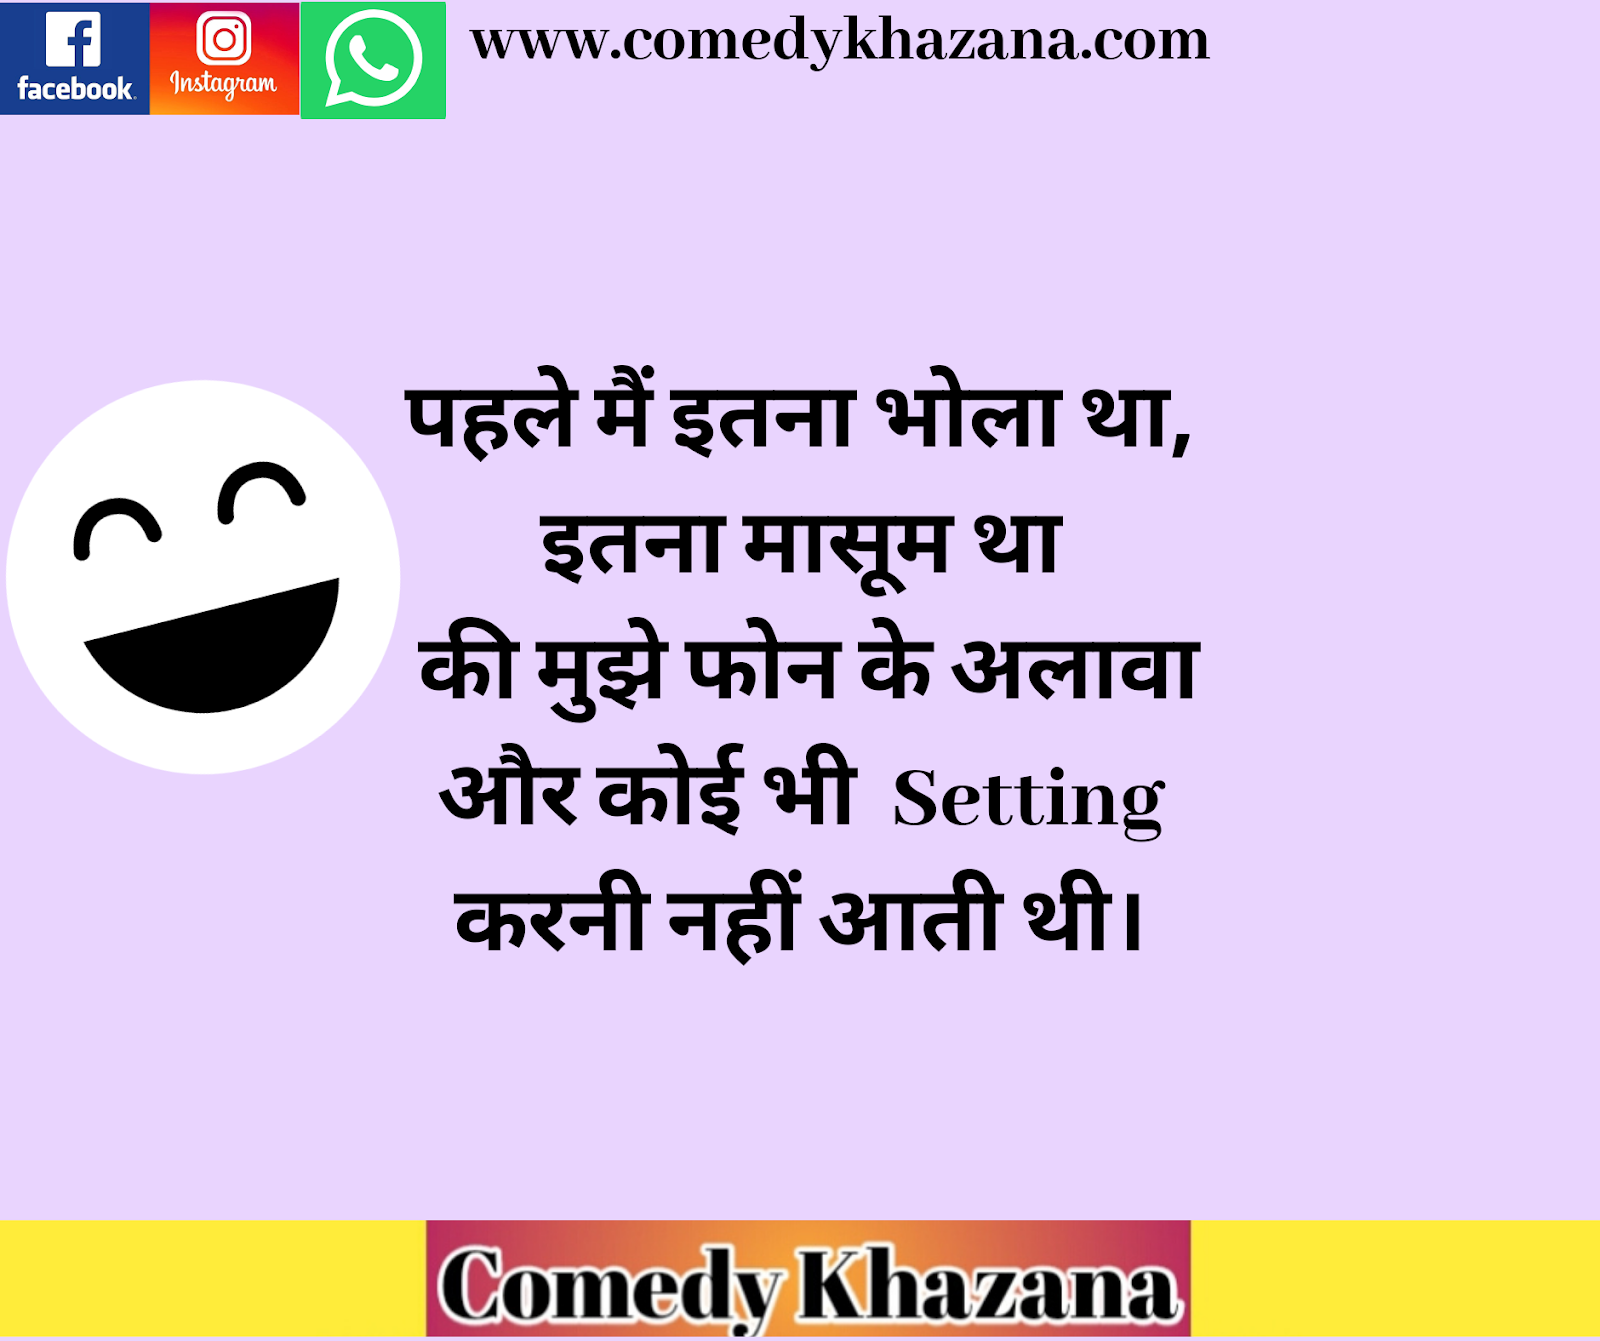 Whatsapp Jokes | व्हाट्सएप हिंदी फनी जोक्स | Comedy Khazanaa 2021